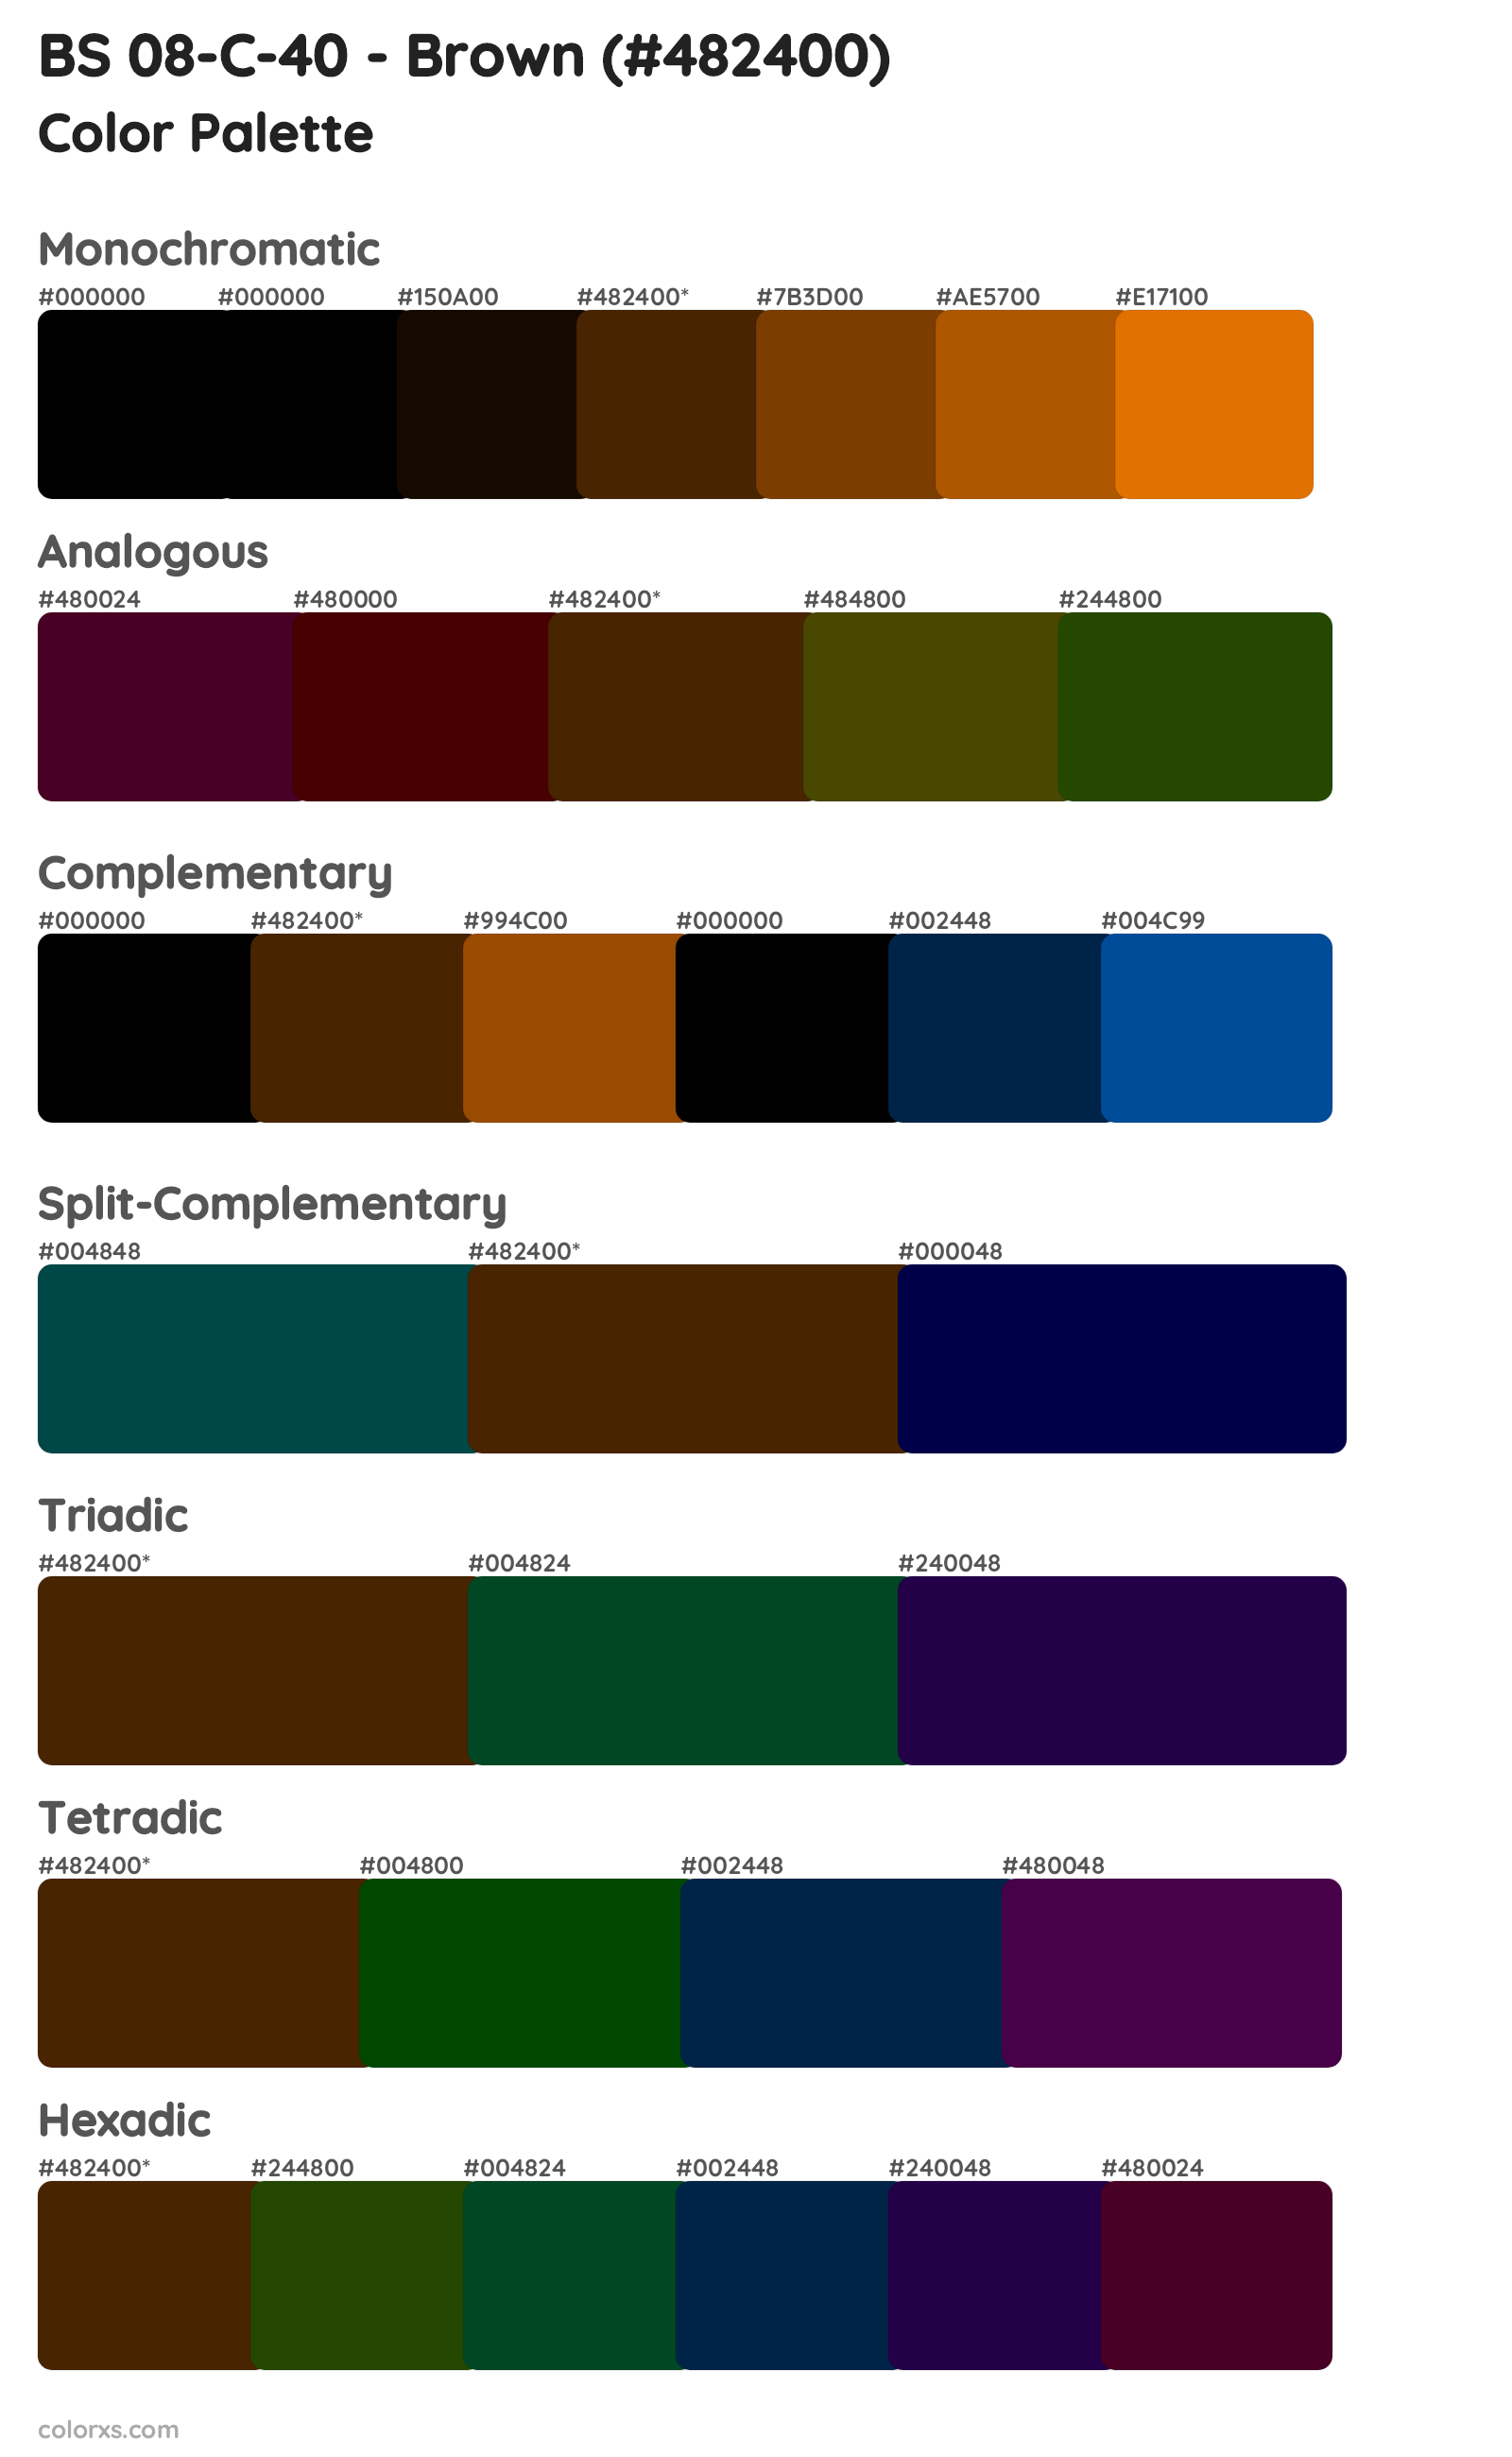 BS 08-C-40 - Brown Color Scheme Palettes